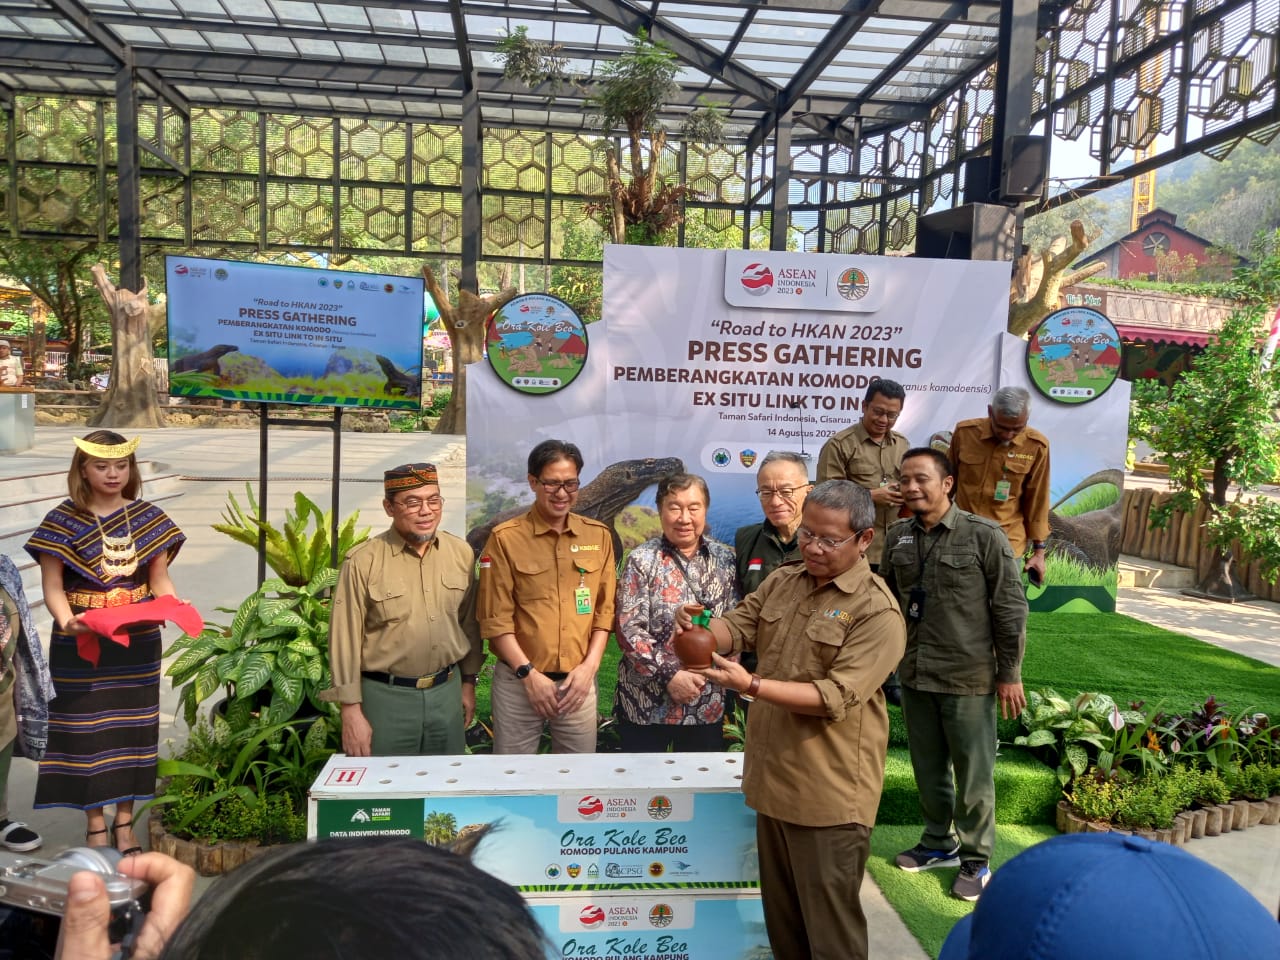 Taman Safari Bogor, Smelting dan KLHK Berangkatkan 6 Ekor Komodo untuk Dilepasliarkan ke Cagar Alam Wae Wuul 